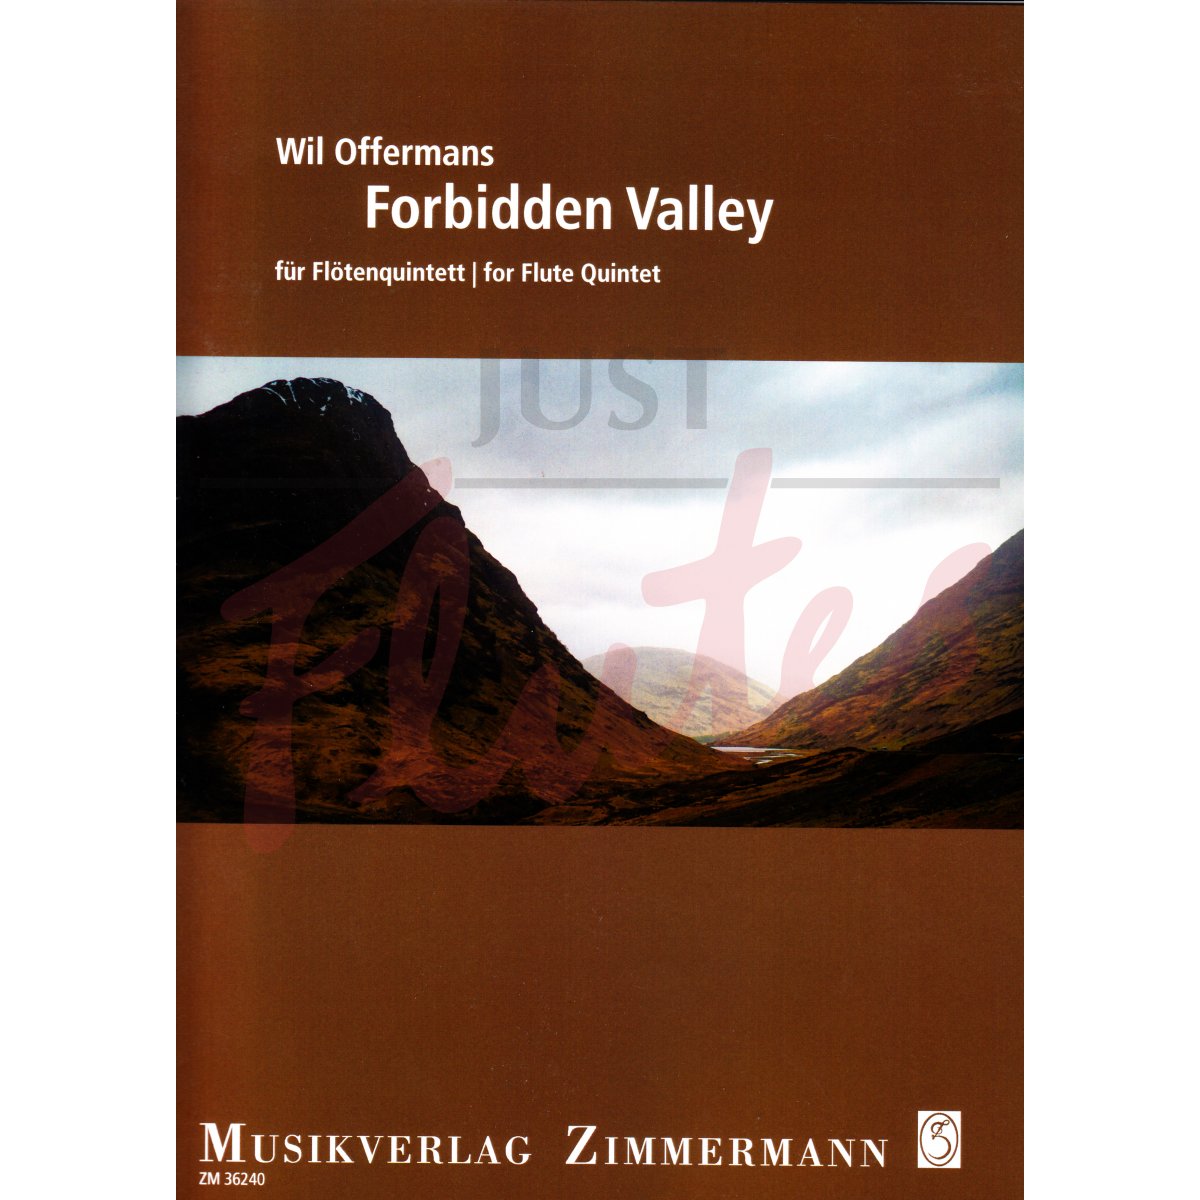 Forbidden Valley for Flute Quintet